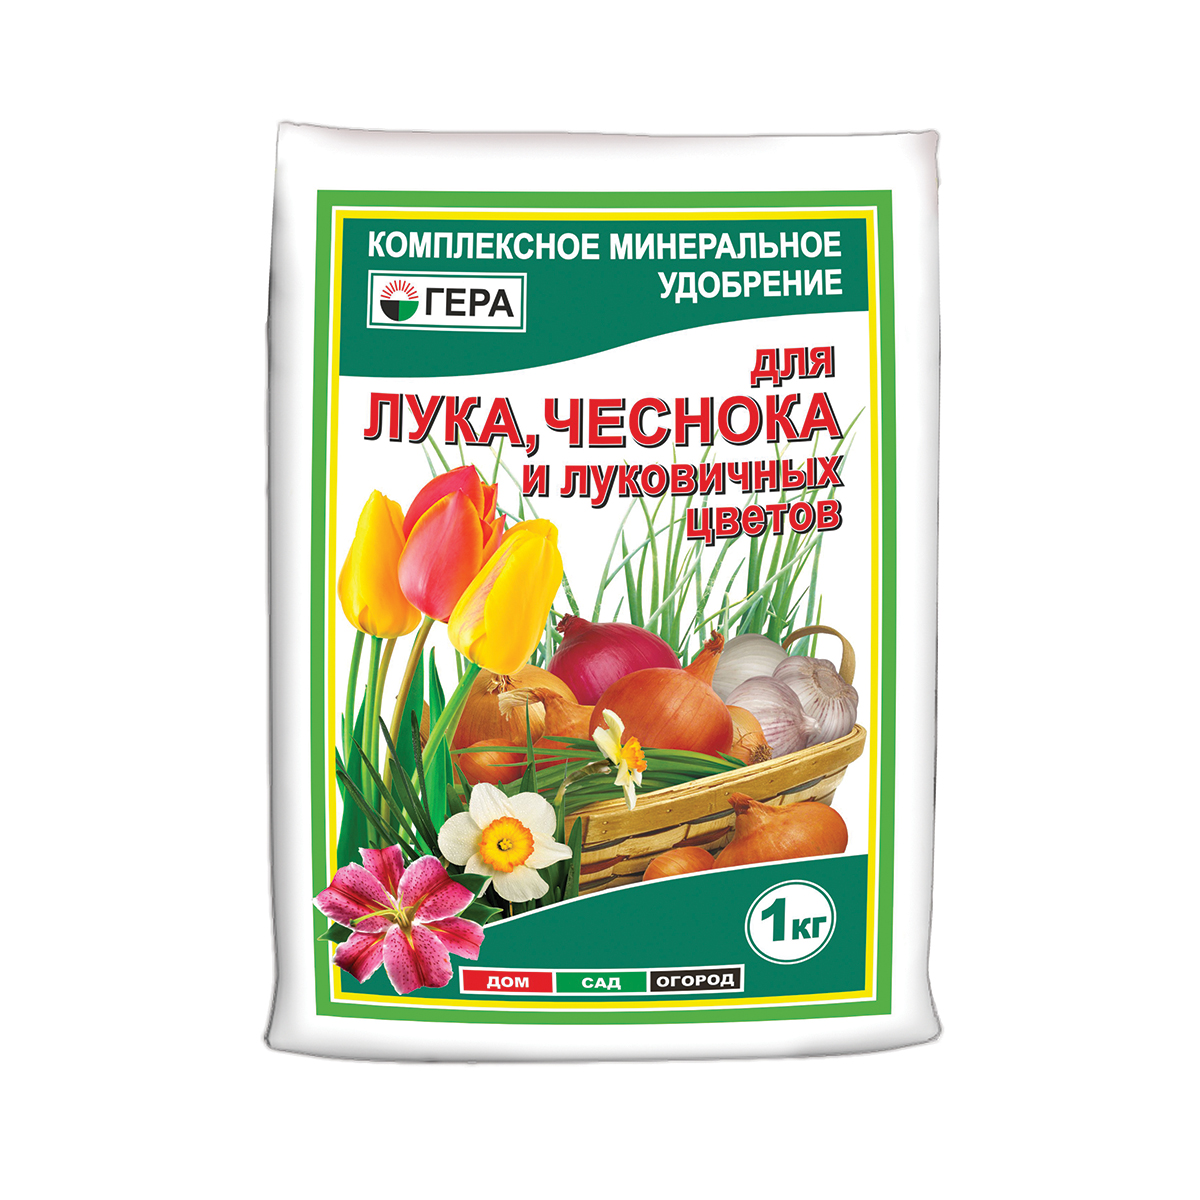 Удобрение для лука и чеснока 1 кг (25) "гера"